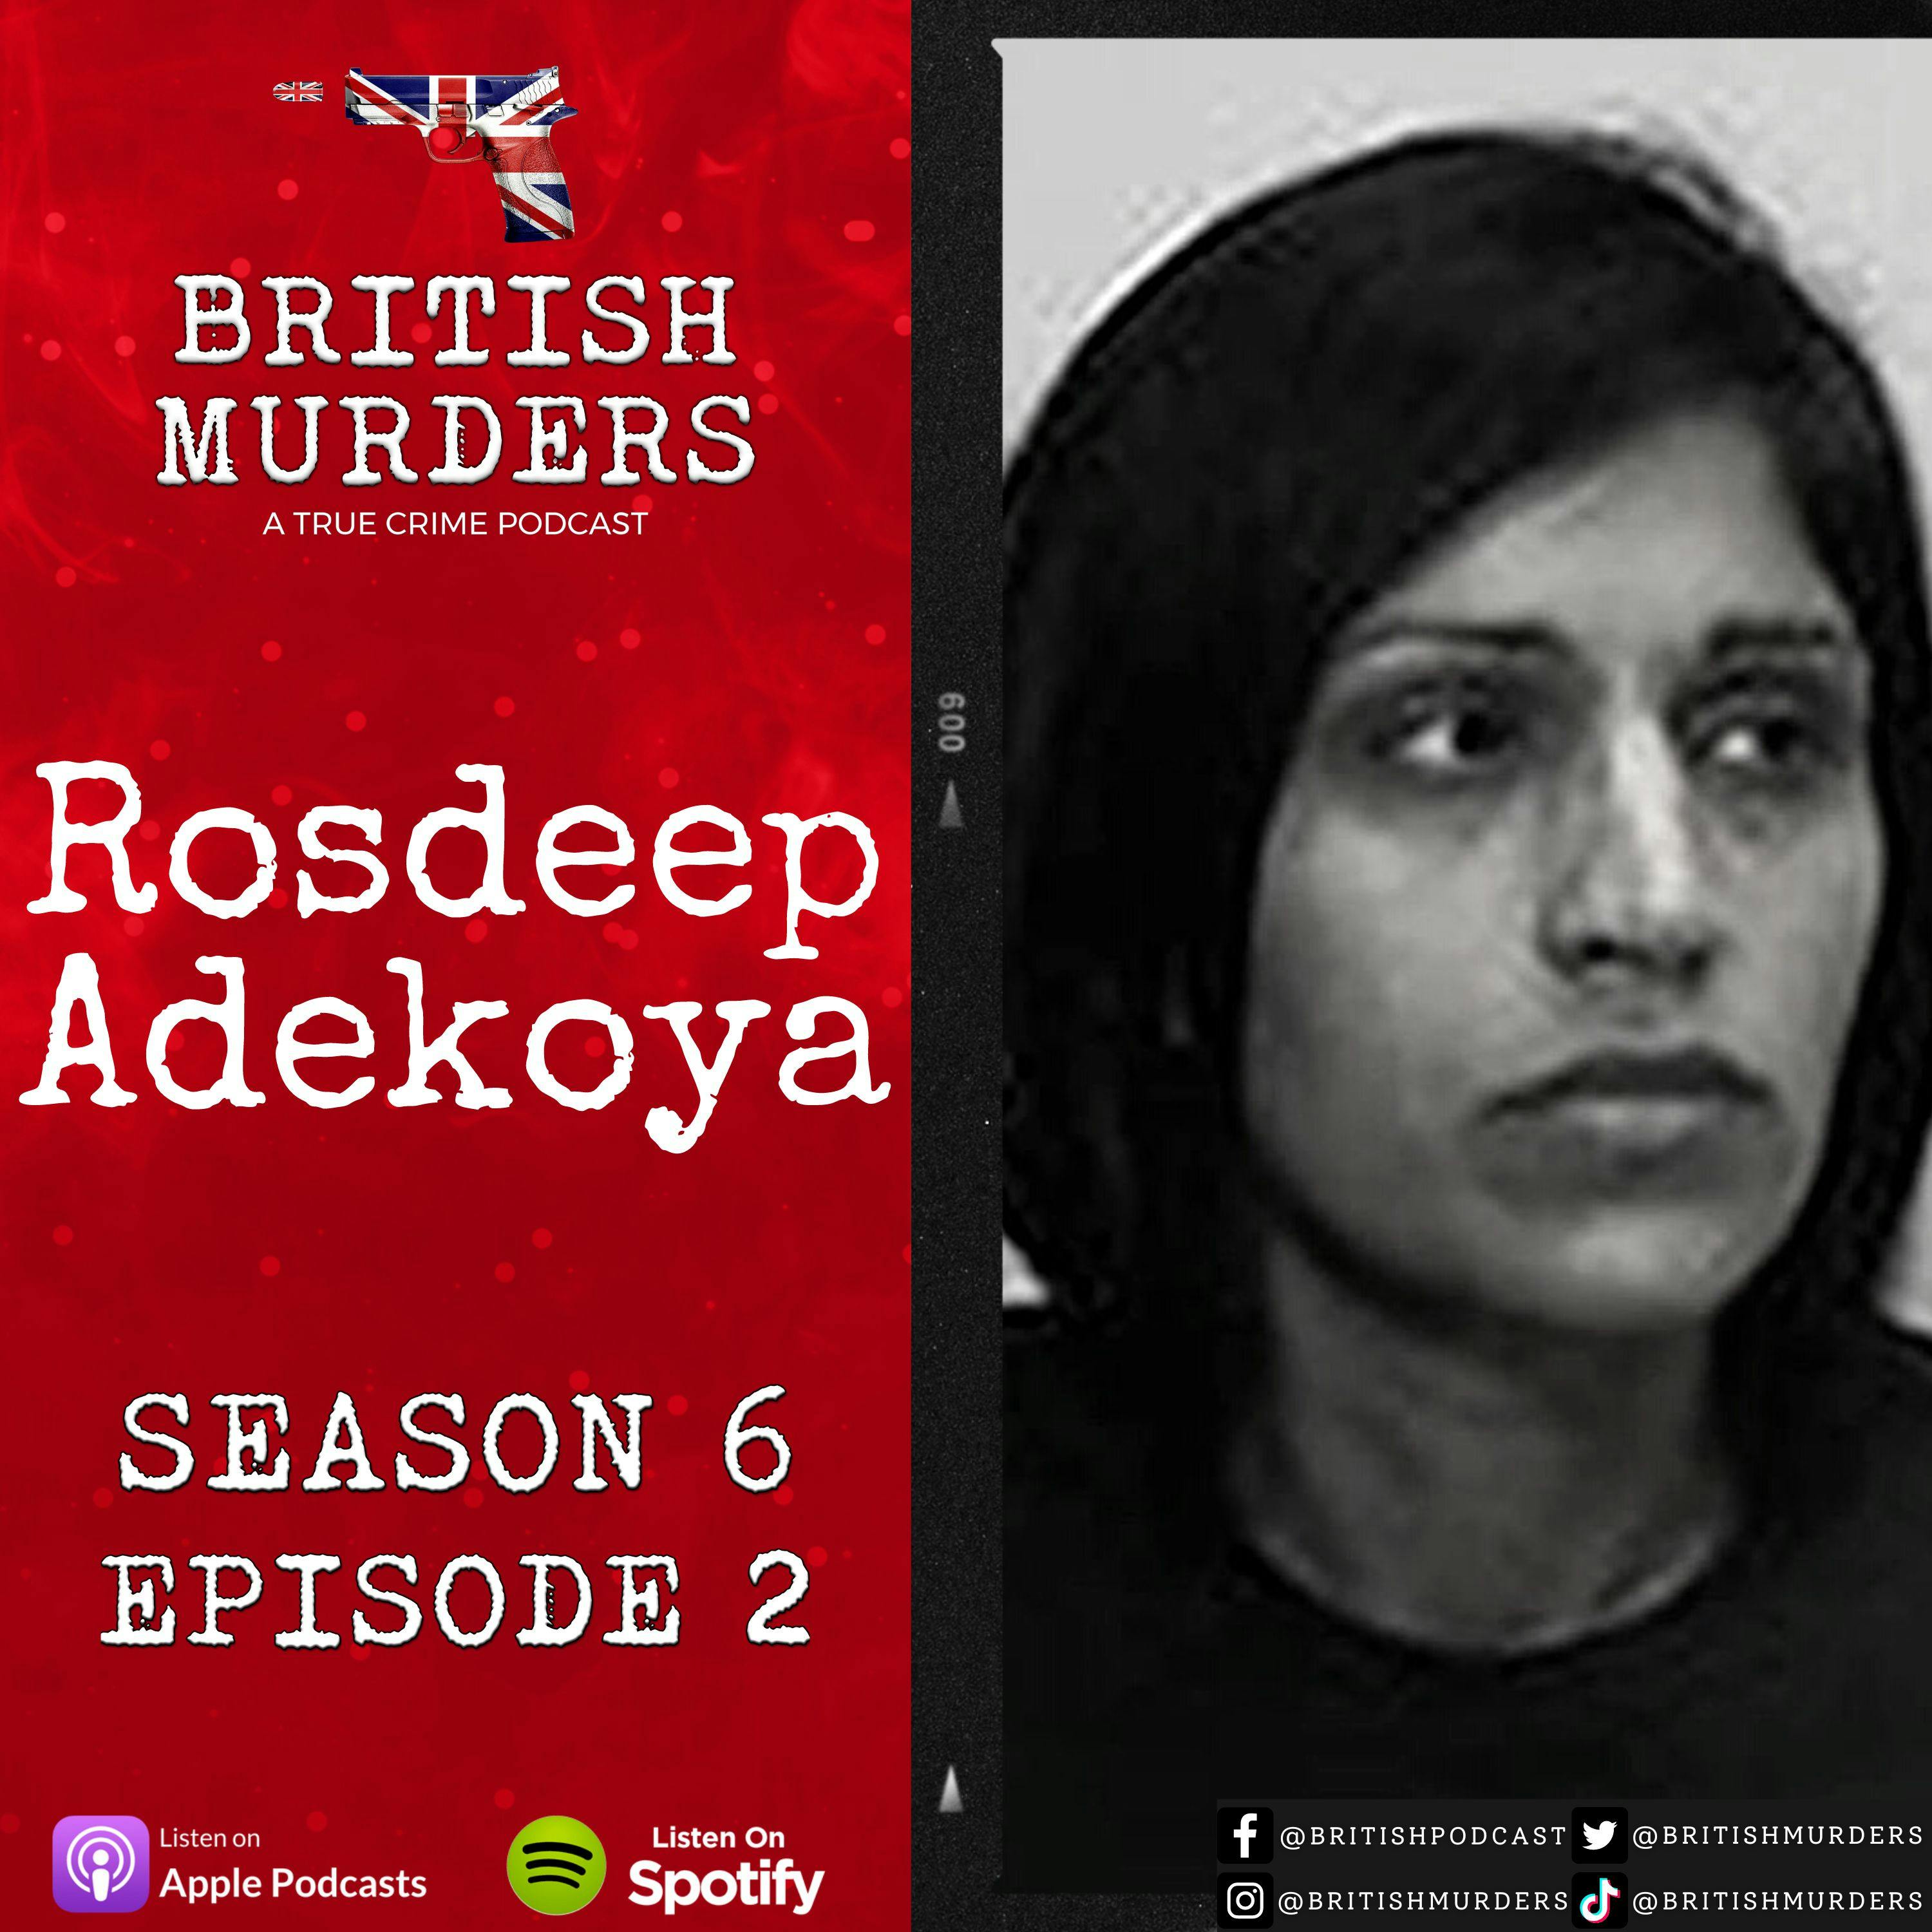 S06E02 - Rosdeep Adekoya (The Murder of Mikaeel Kular)